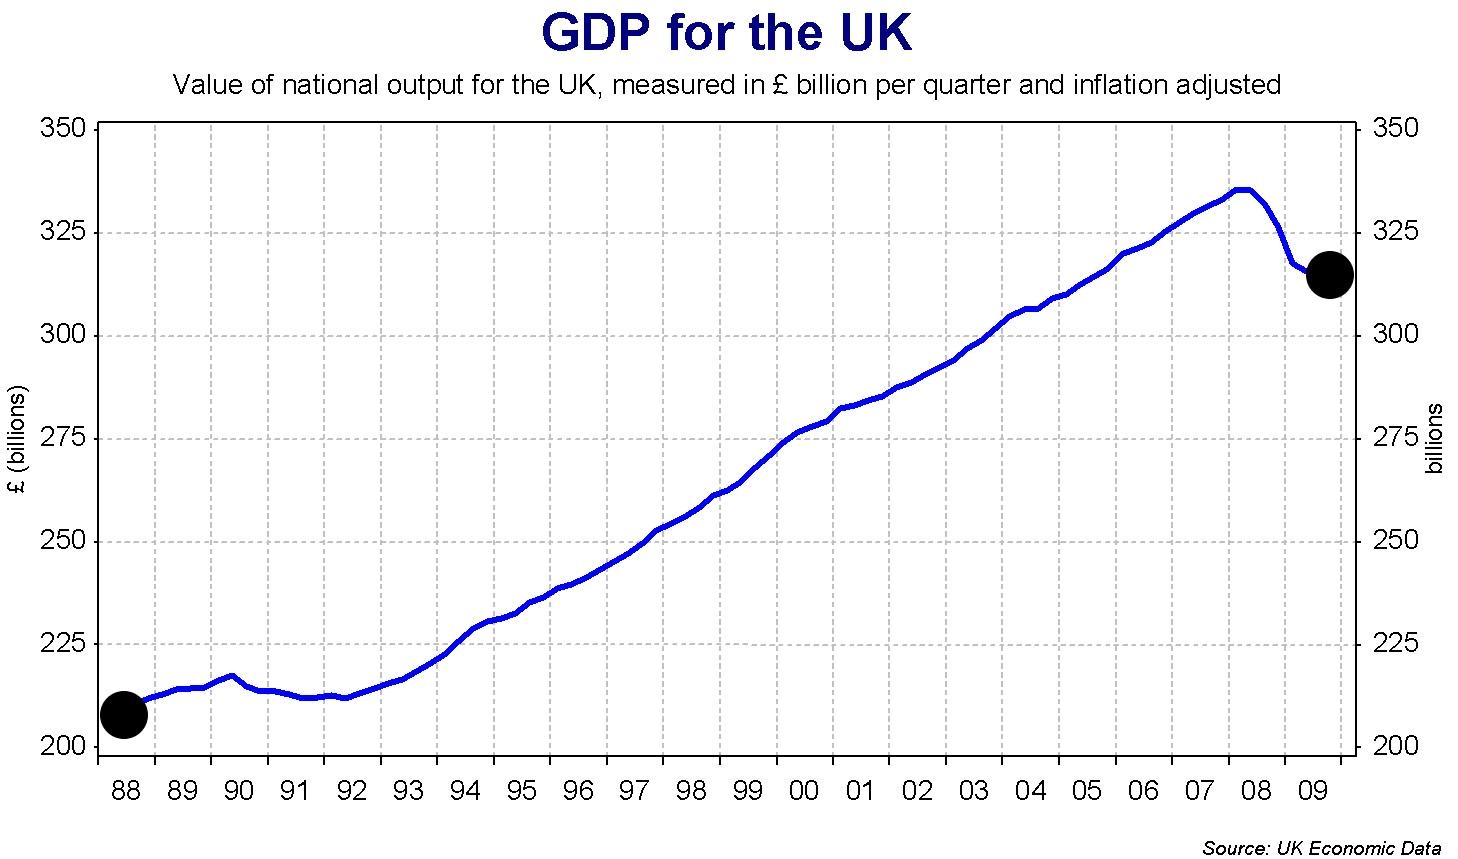 График ежегодных значений ВВП Великобритании в миллиардах фунтов стерлингов с 1988 по 2009 год